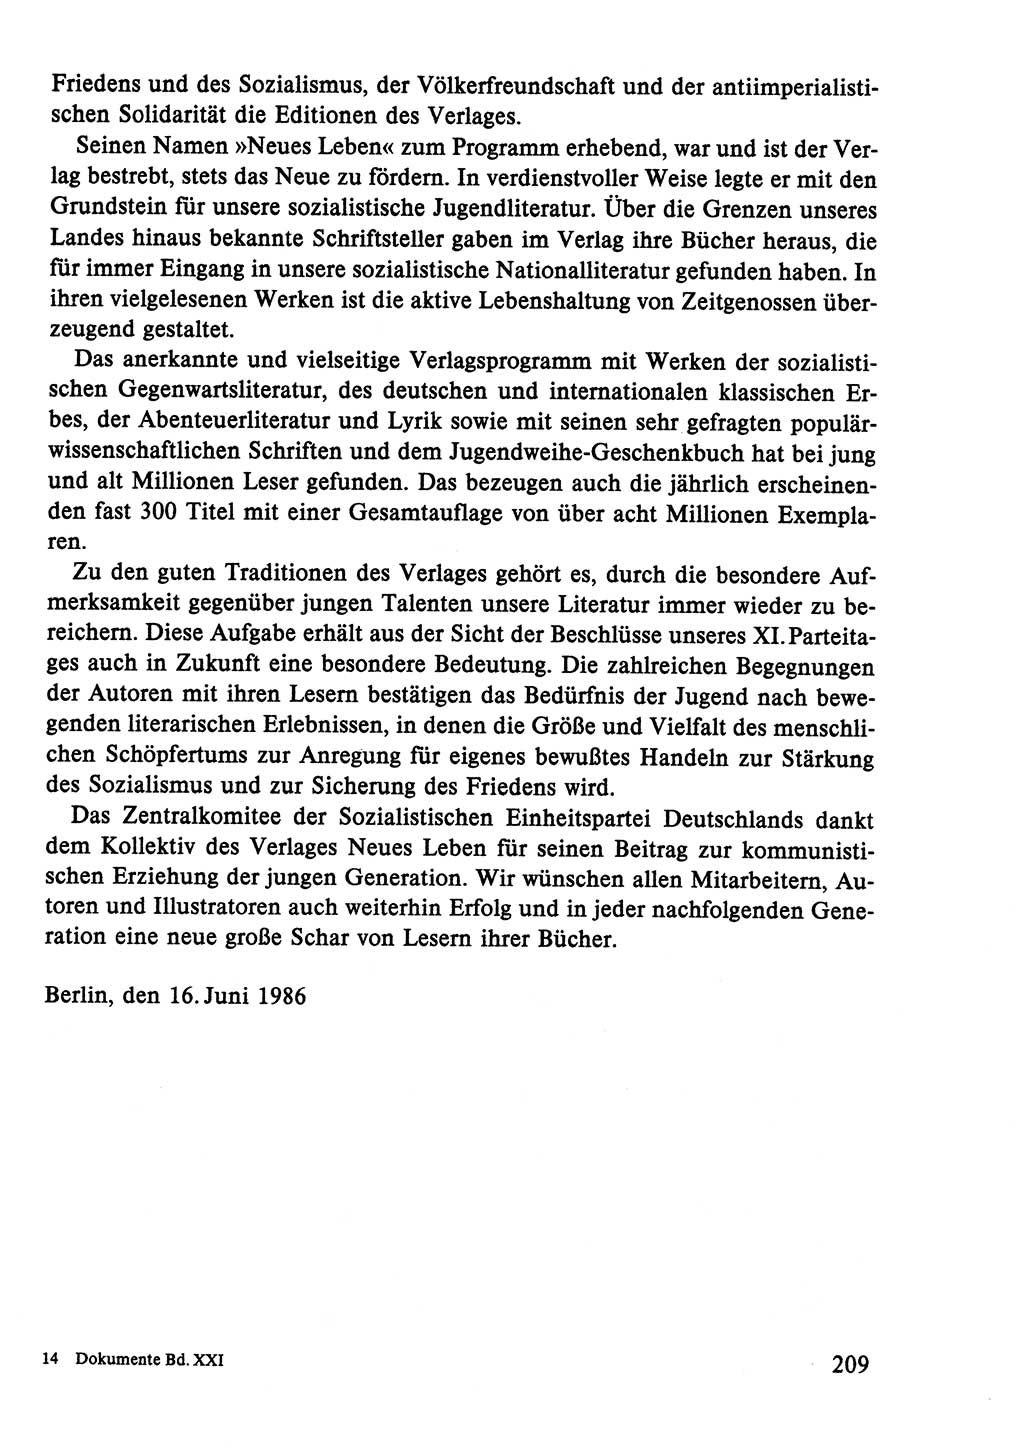 Dokumente der Sozialistischen Einheitspartei Deutschlands (SED) [Deutsche Demokratische Republik (DDR)] 1986-1987, Seite 209 (Dok. SED DDR 1986-1987, S. 209)